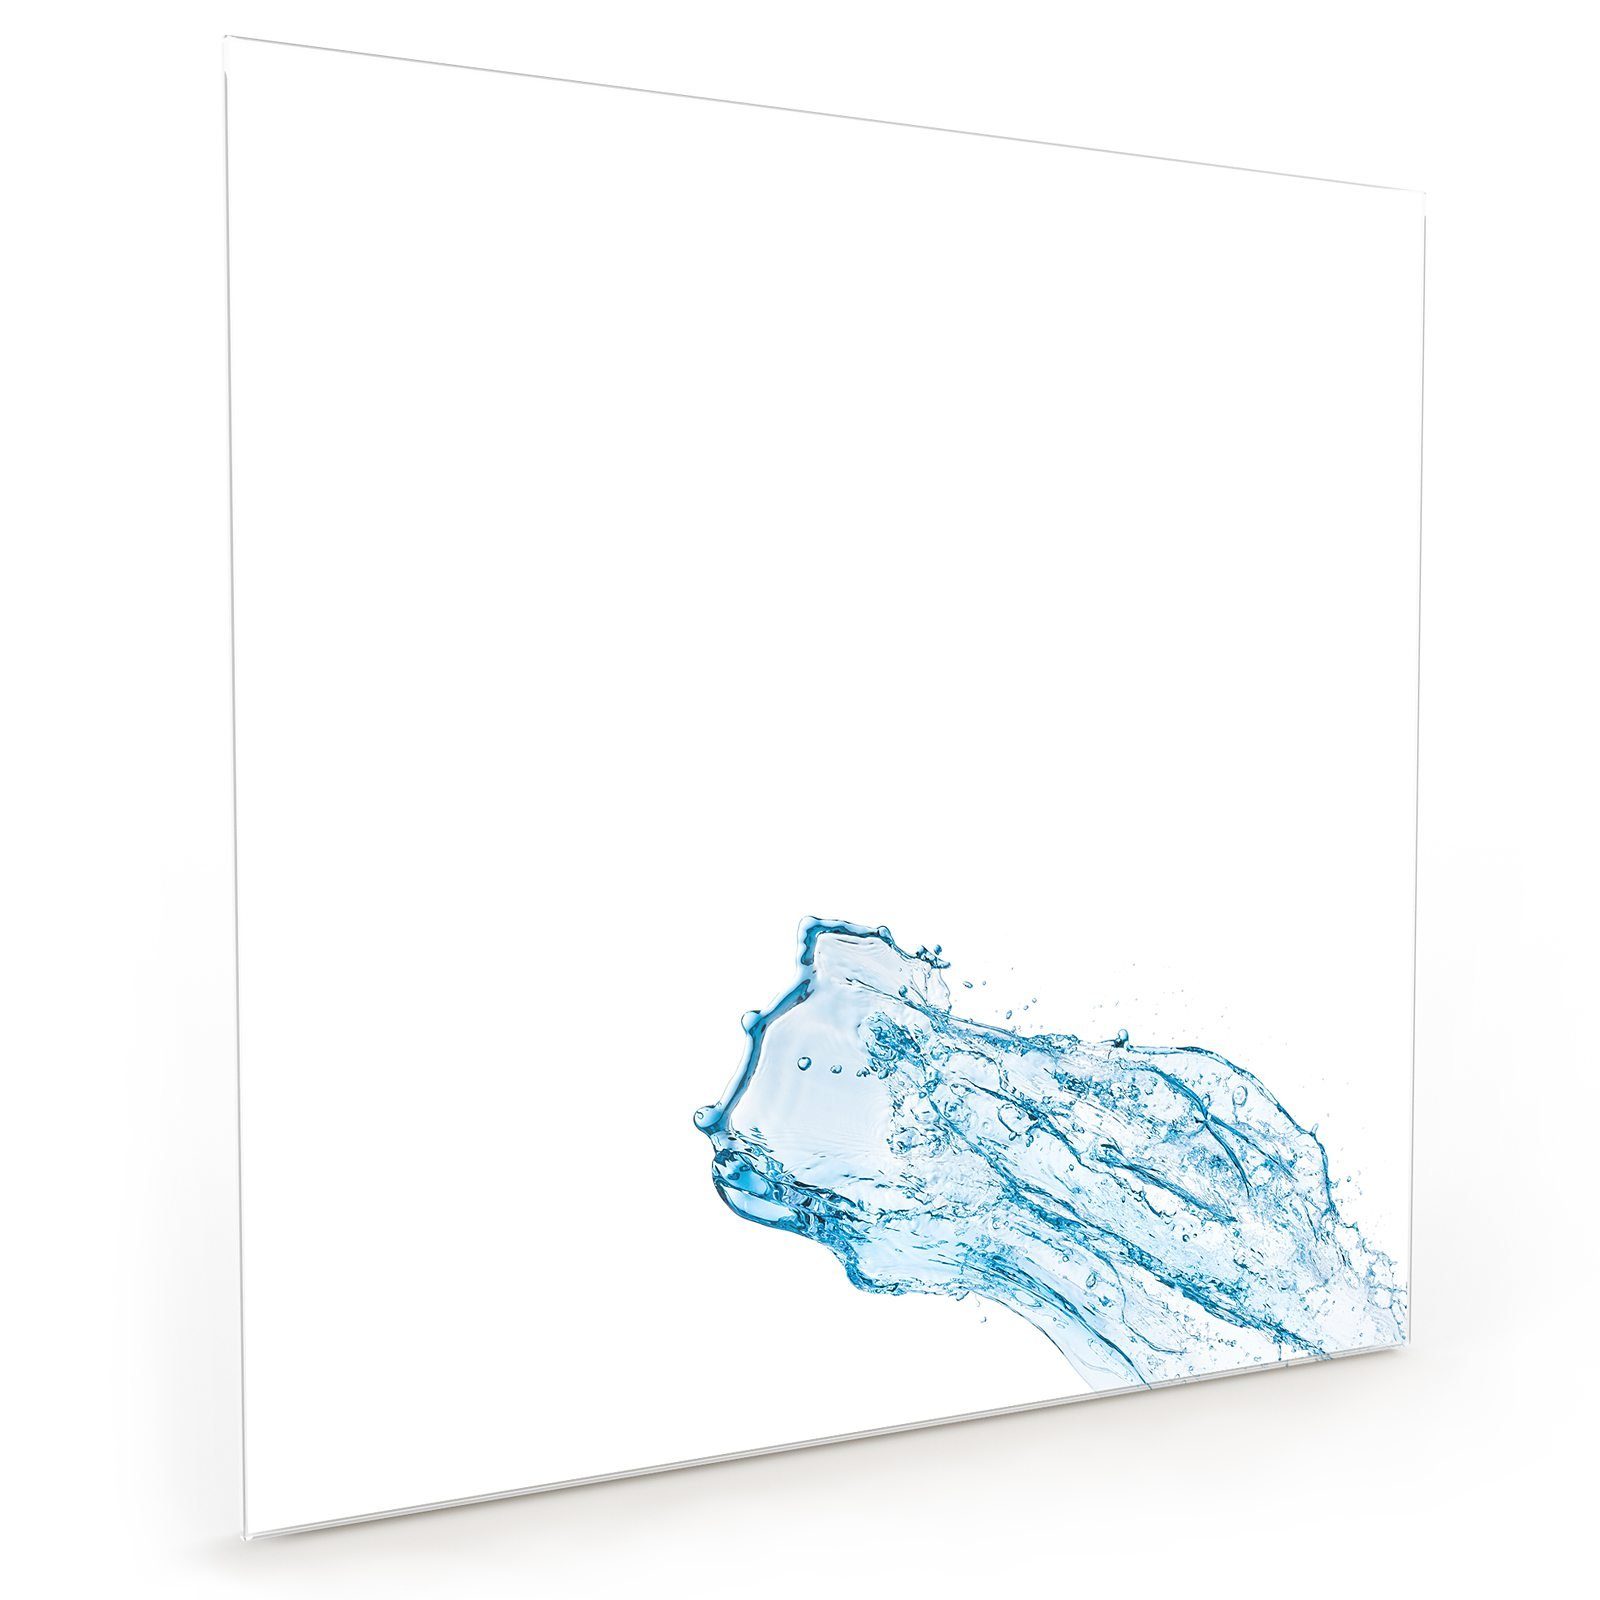 Primedeco Küchenrückwand Küchenrückwand Spritzschutz Wassersplash Glas Blaue Motiv mit